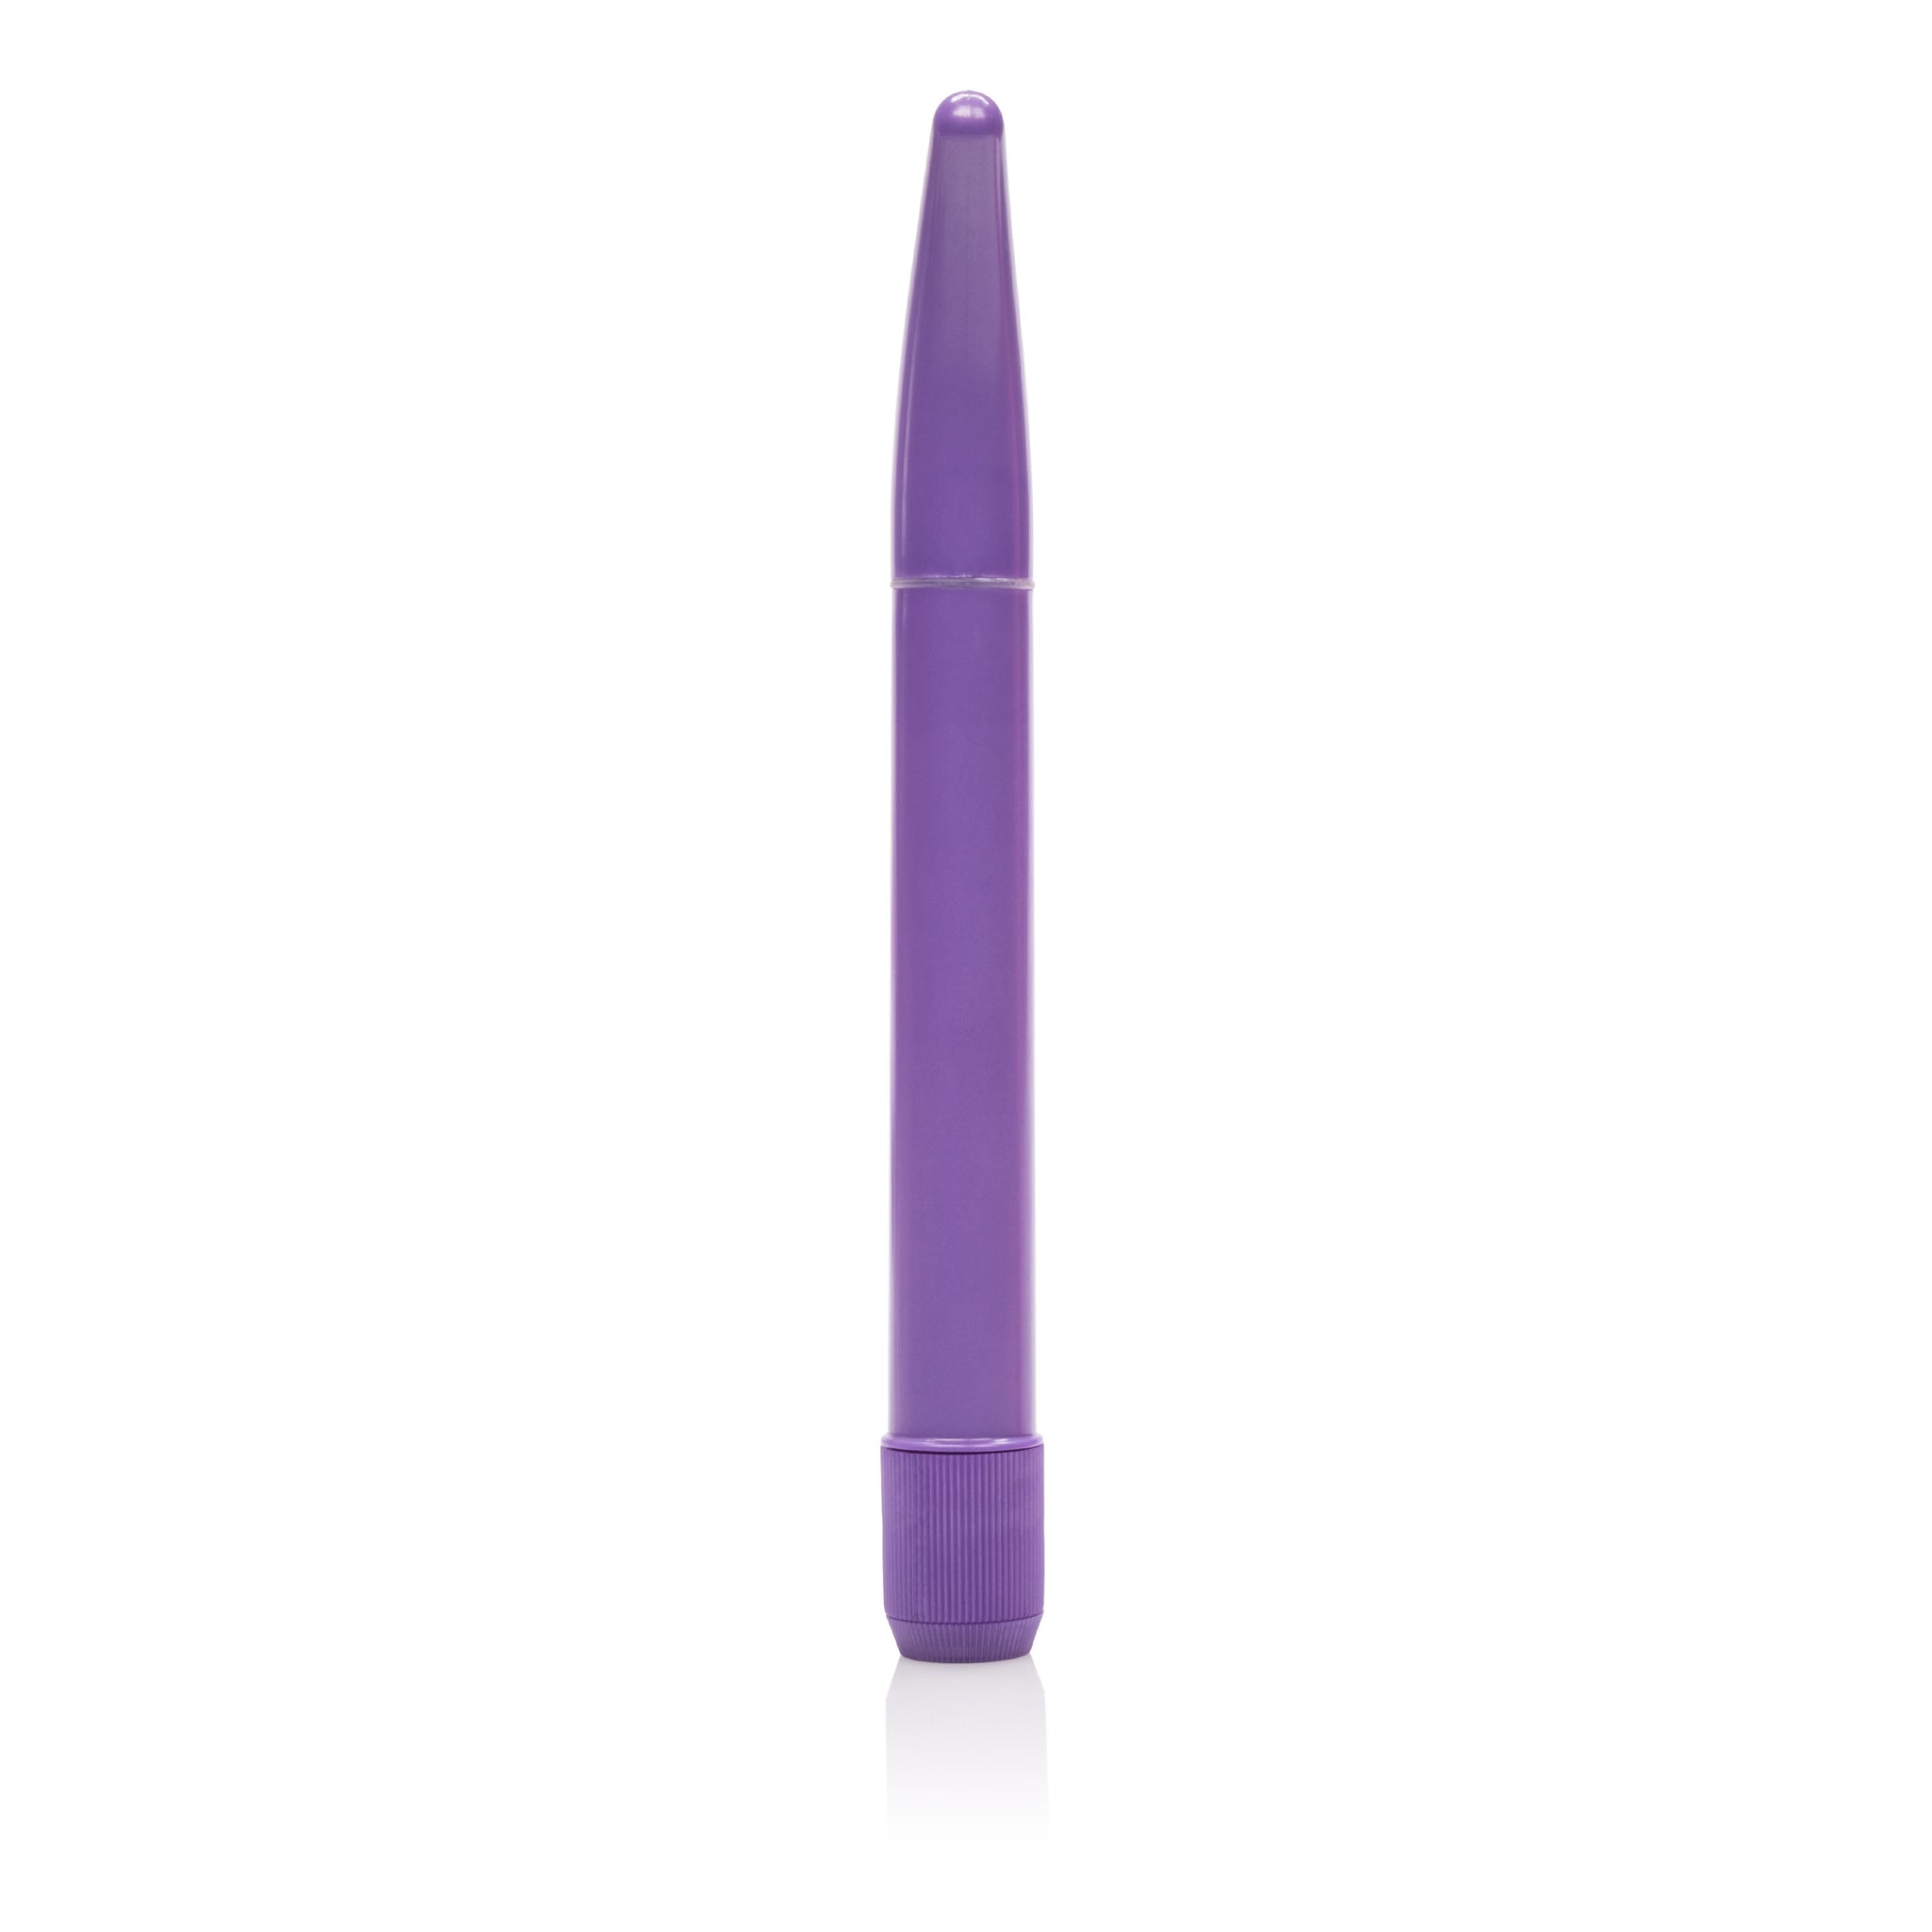 Slenderr G-Spot 7 Inches Massager - Purple SE0557142